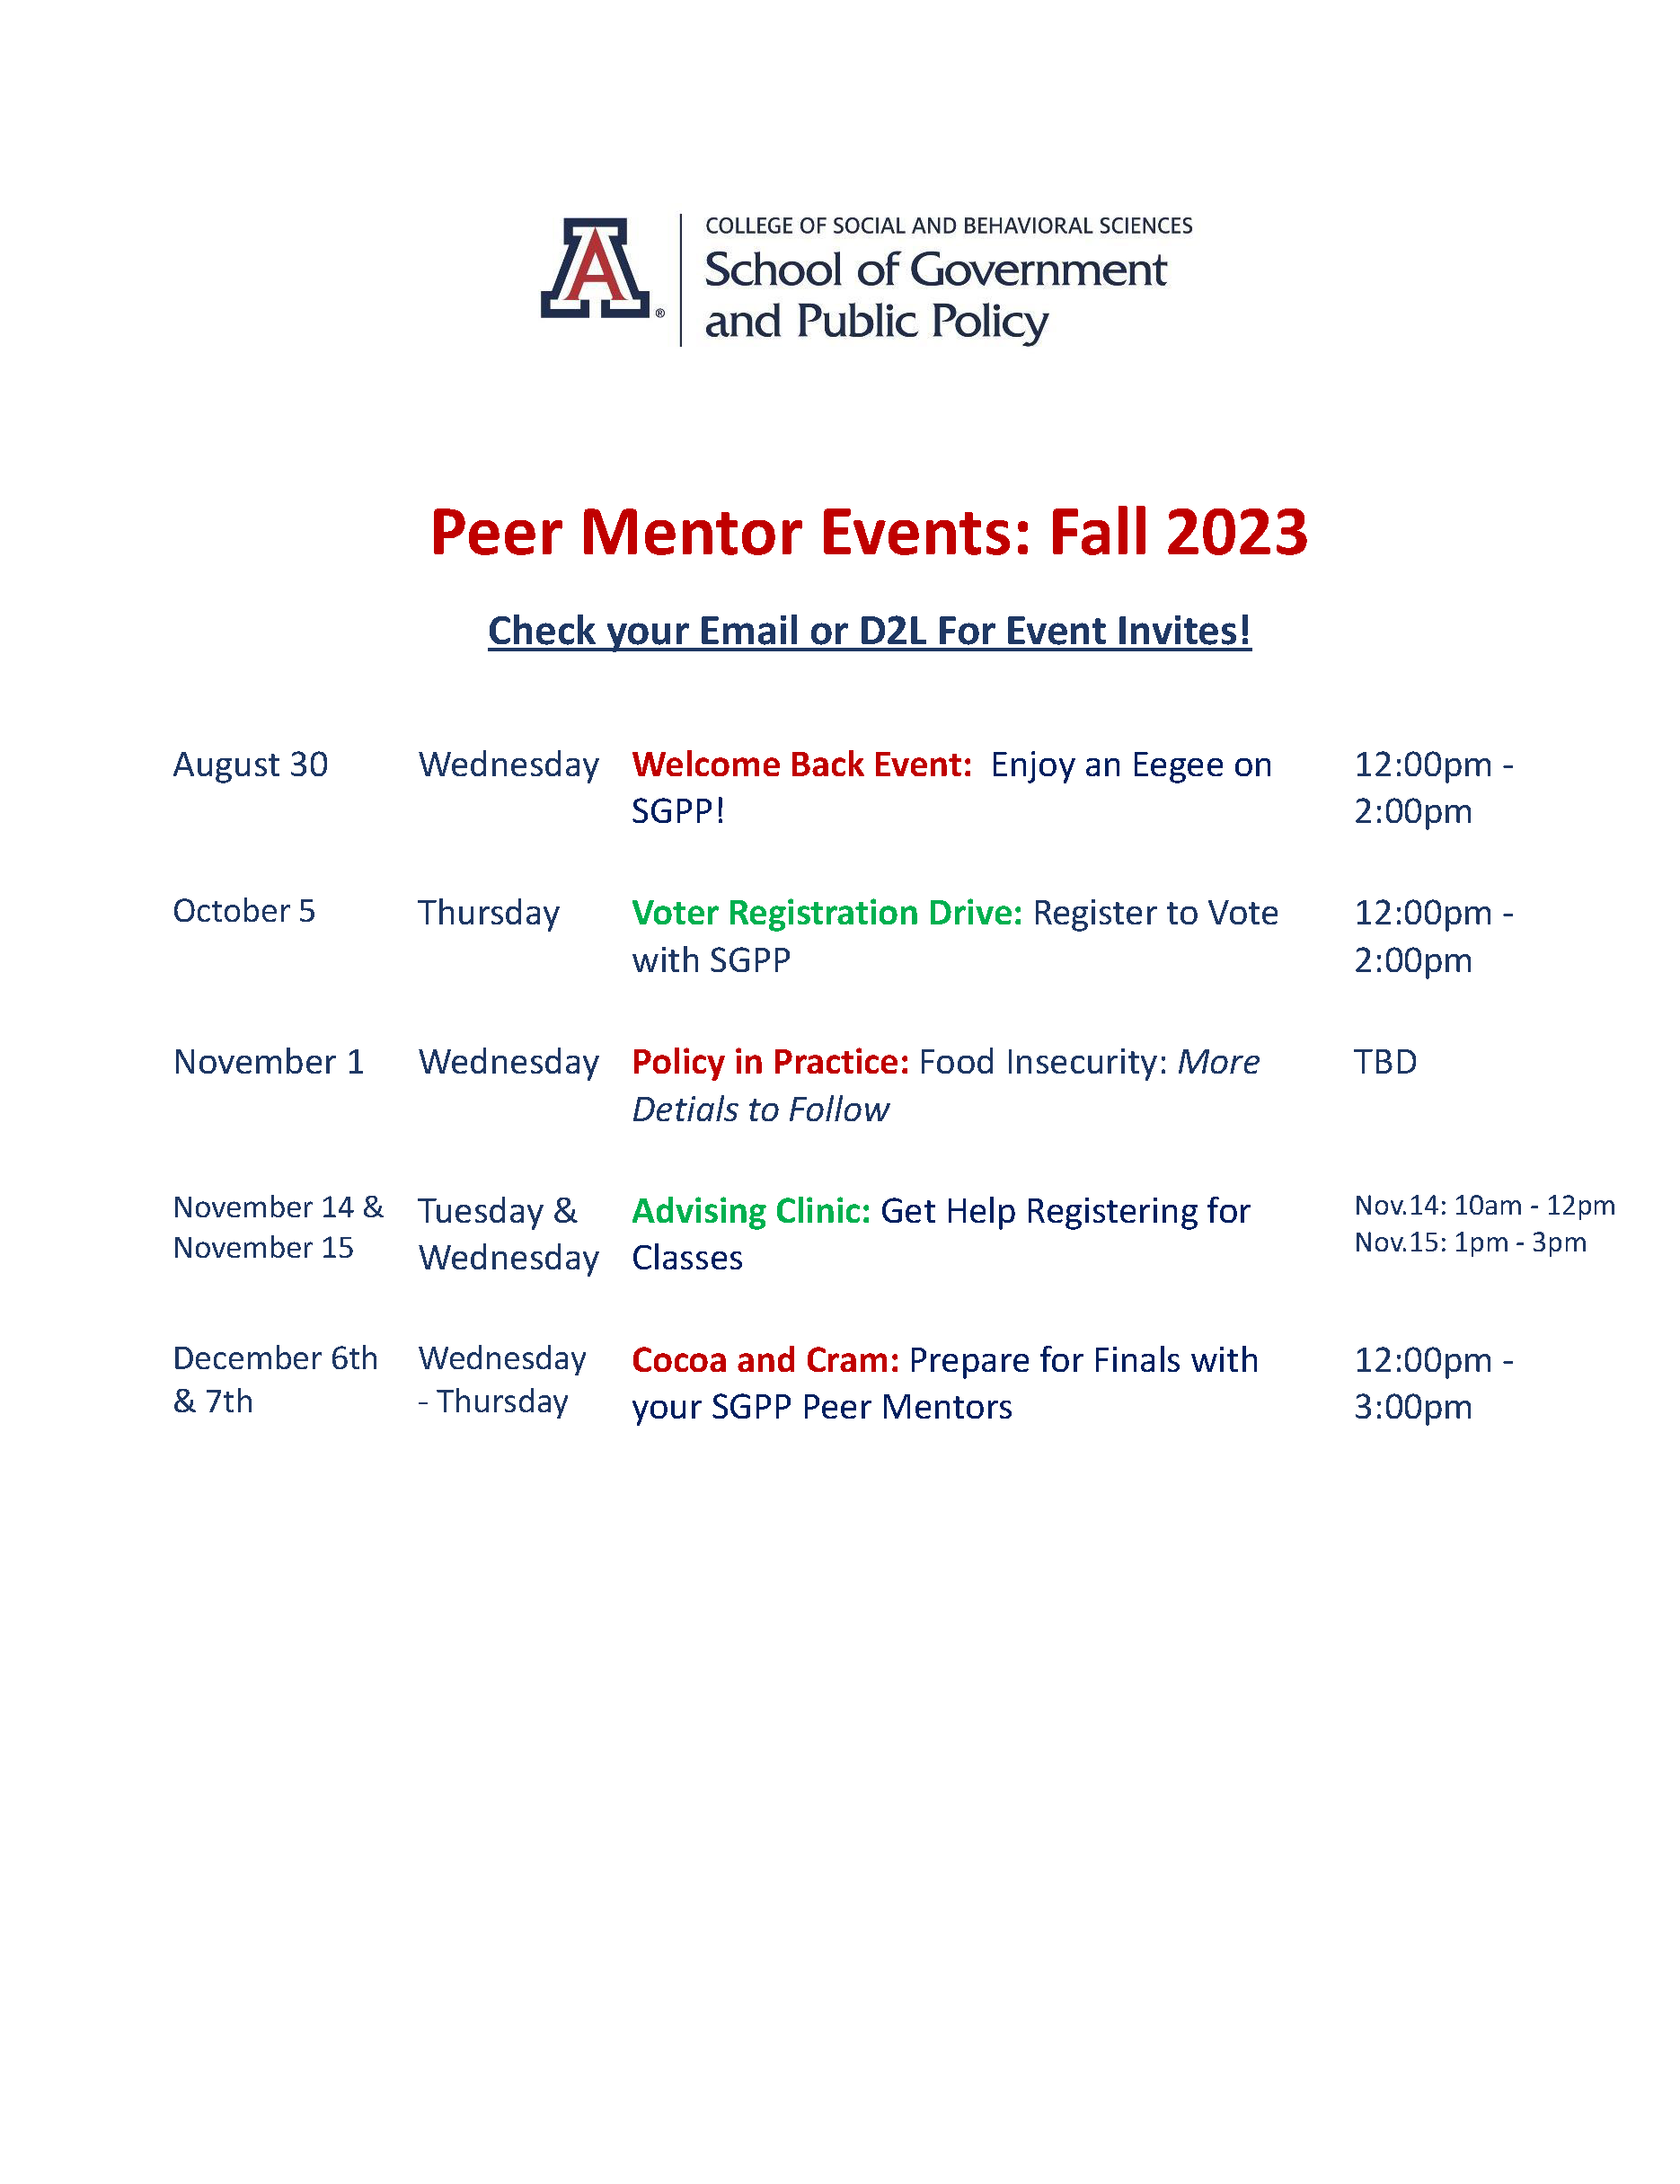 Schedule of Peer Mentor Events